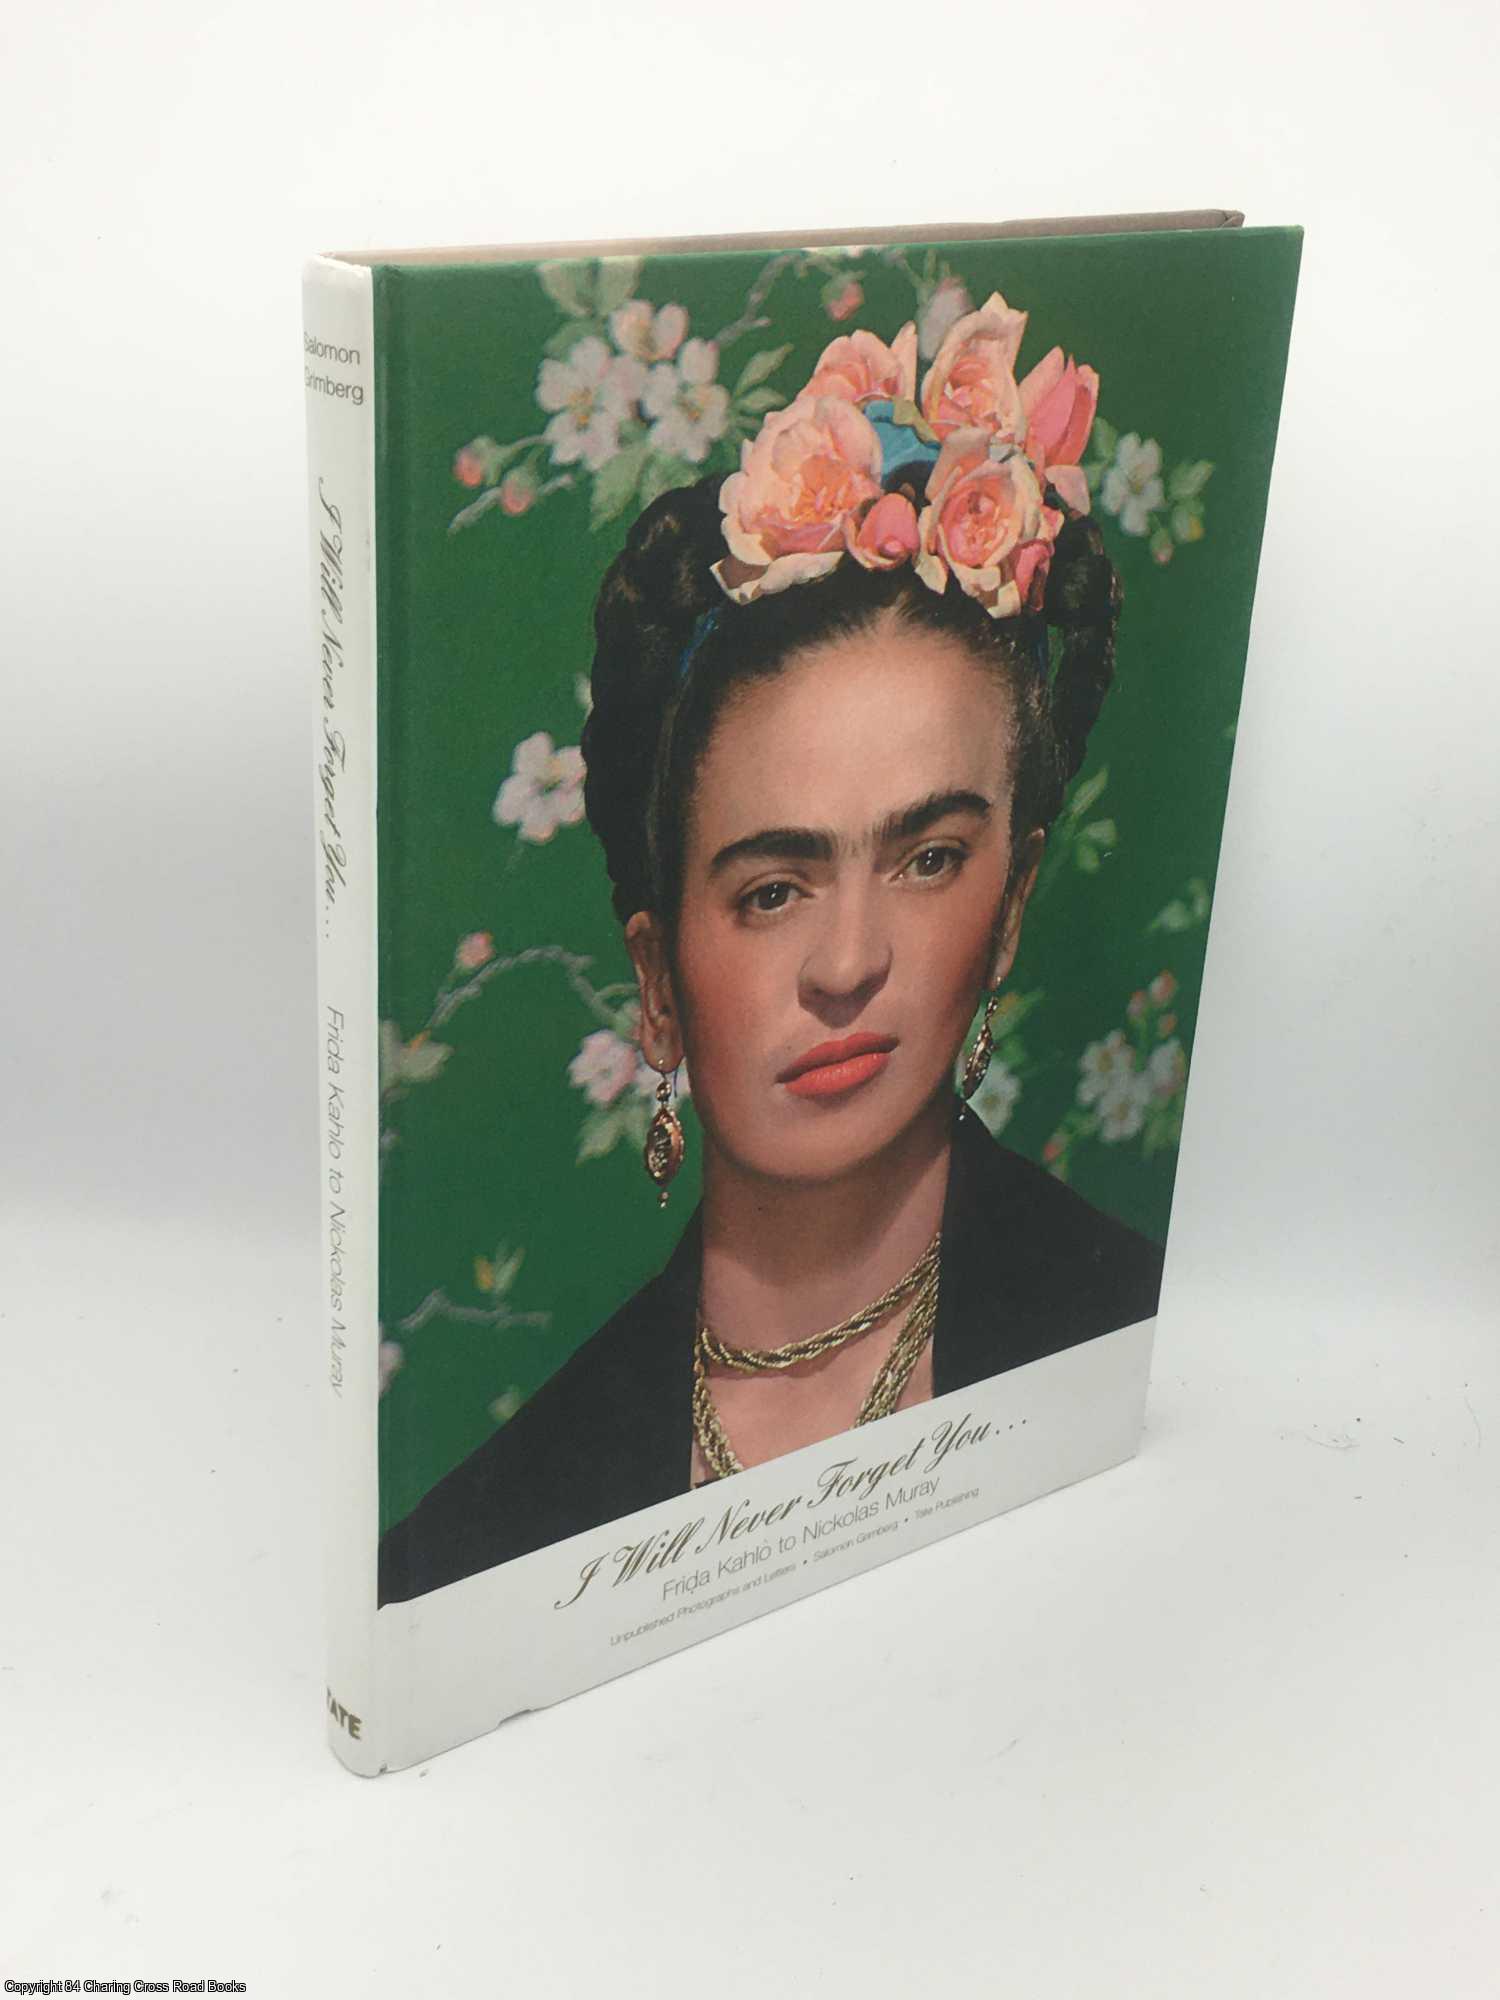 Grimberg - I Will Never Forget You: Frida Kahlo to Nickolas Muray